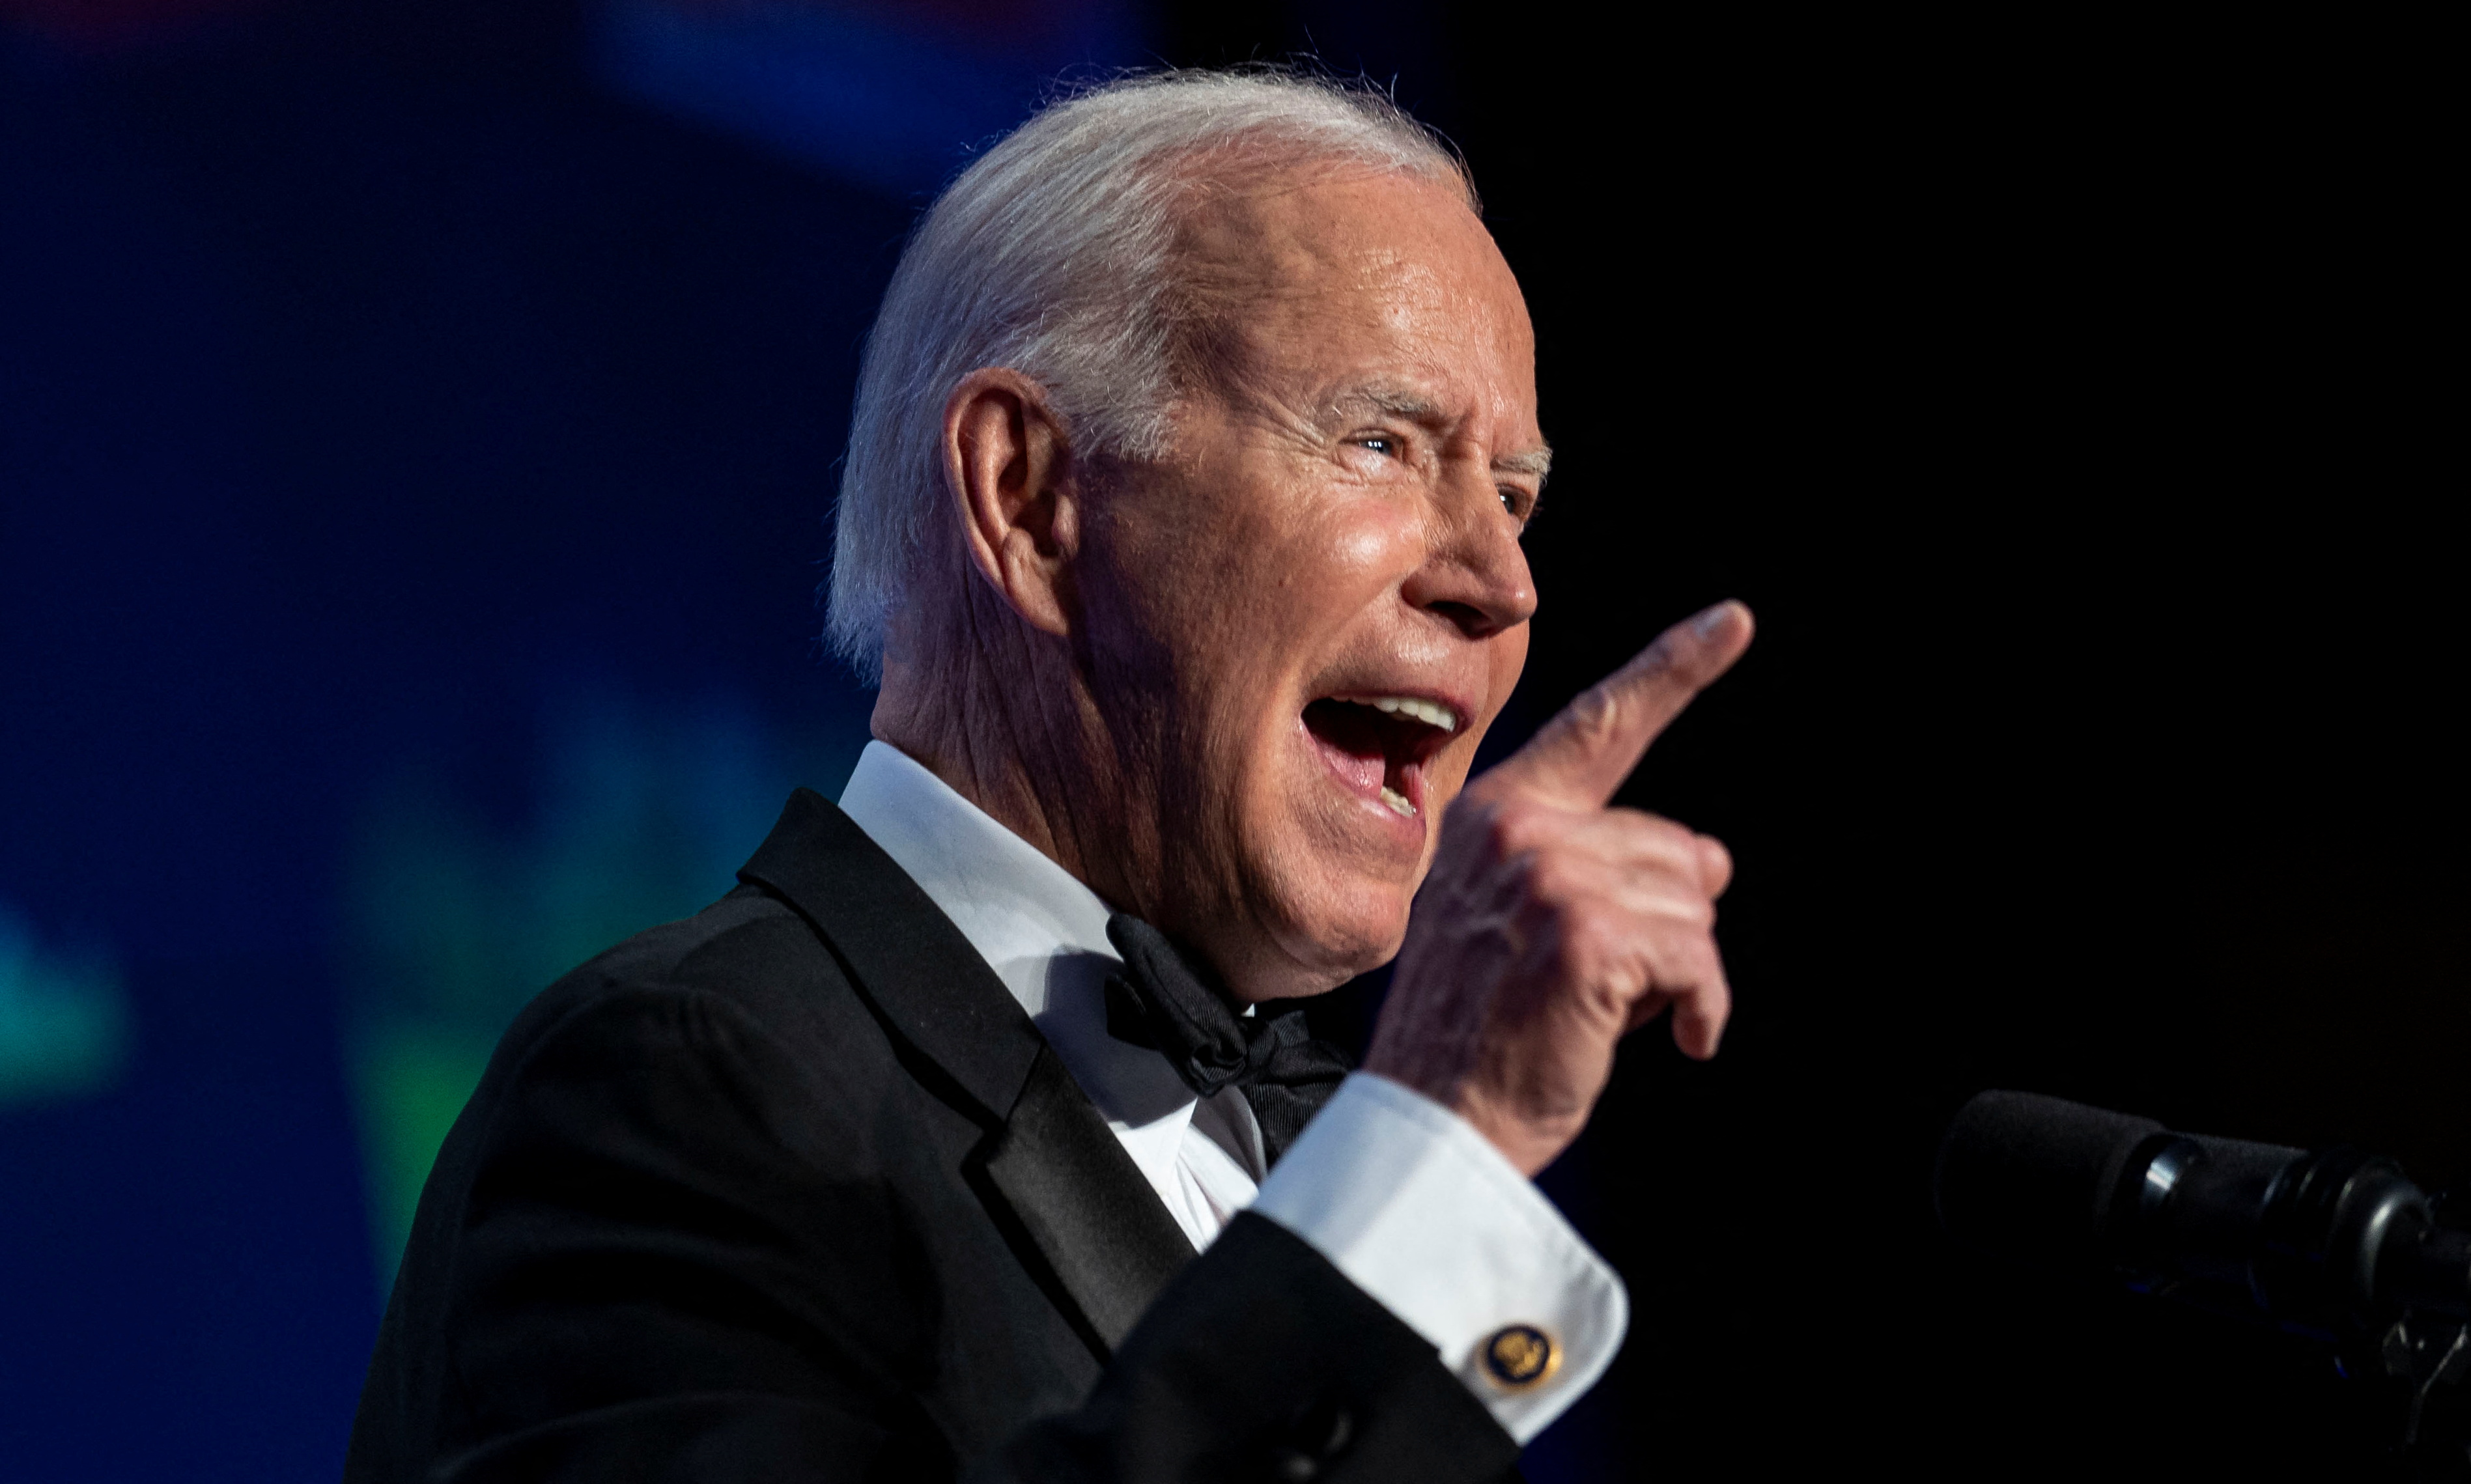 Joe Biden pidió “vender” los activos incautados a los oligarcas para “remediar el daño causado por Rusia y ayudar a construir Ucrania”. REUTERS/Al Drago